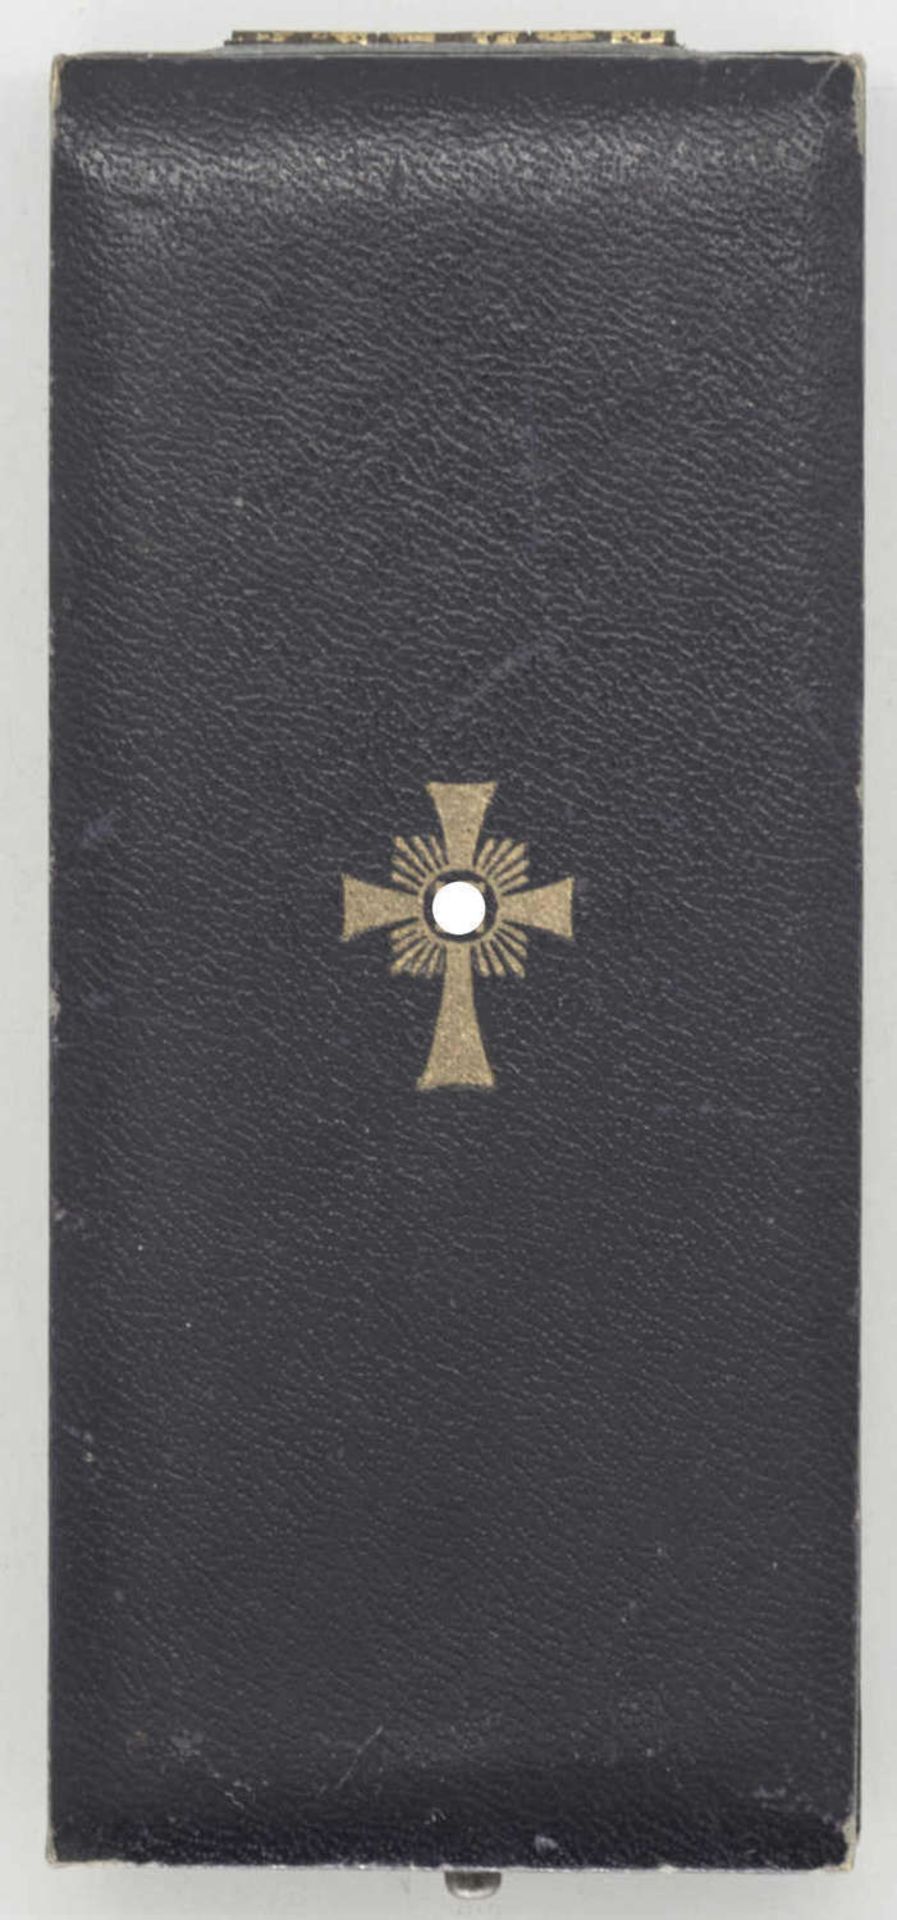 Deutsches Mutterkreuz in Gold am Band, im Verleihungs - Etui. Rückseitig: 16. Dezember 1938. - Bild 4 aus 4